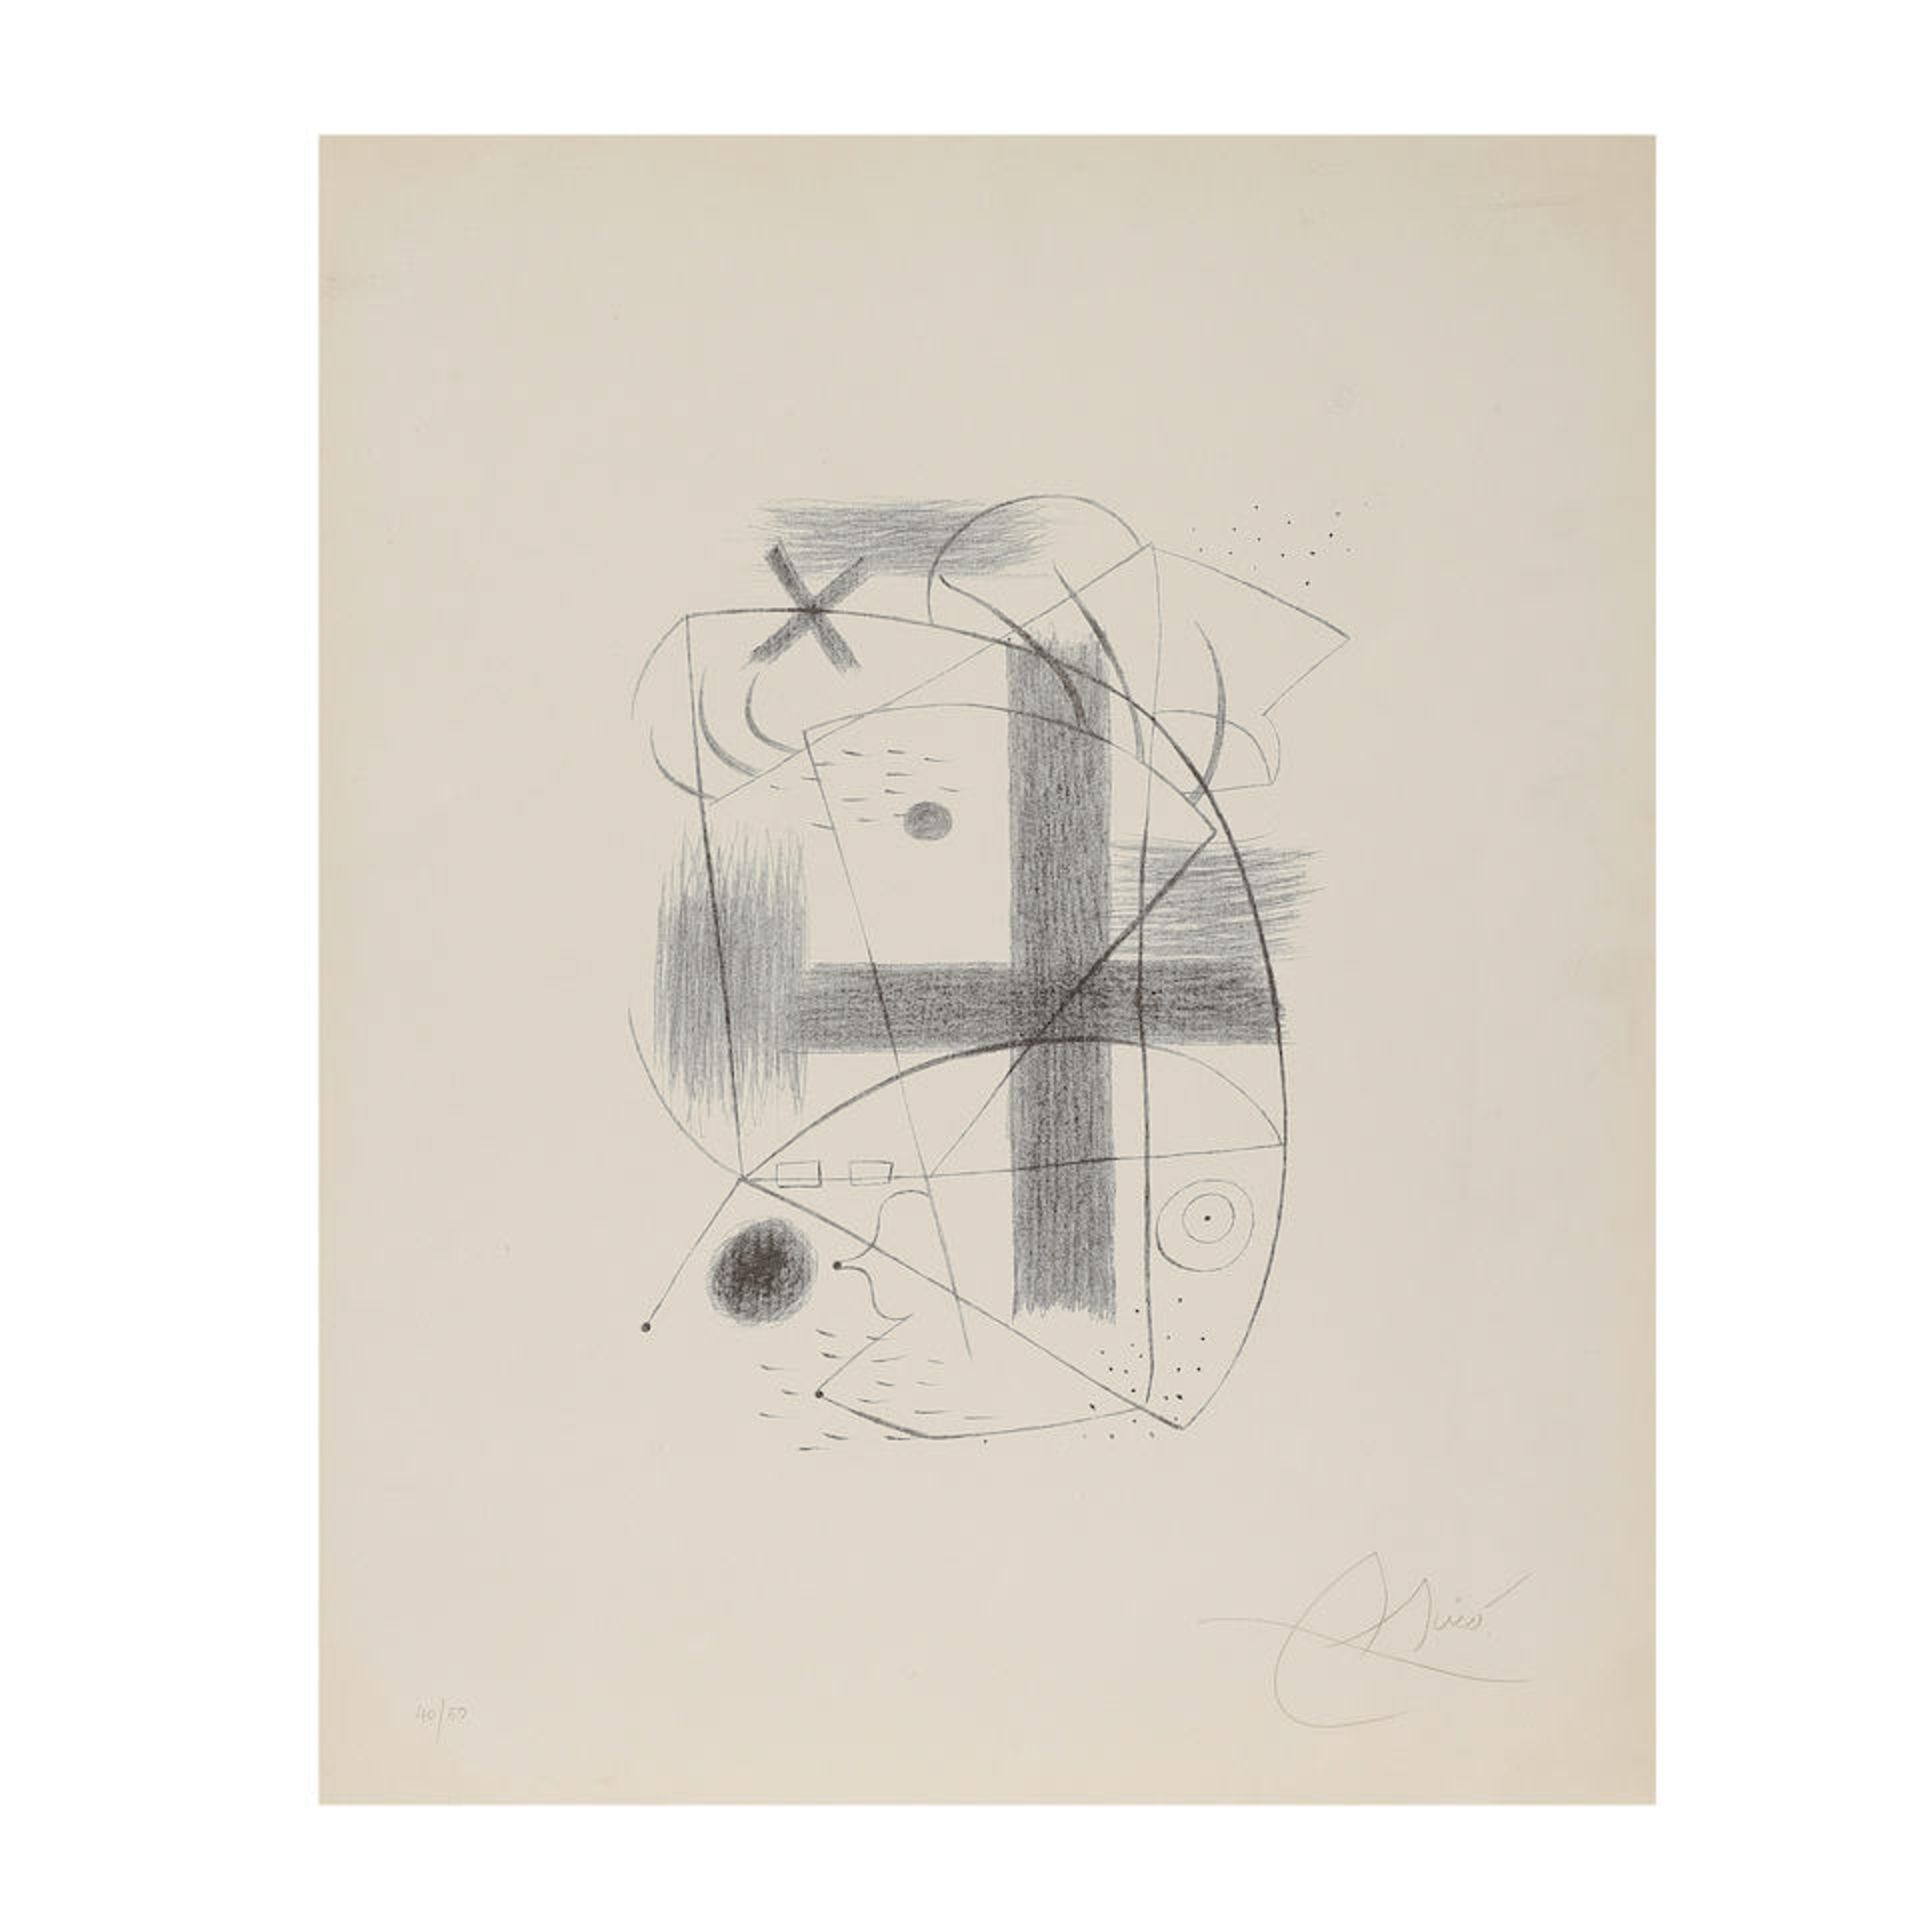 JOAN MIRÓ (1893-1983) Lithographie II, 1930 (Maeght, 1a)Lithographie en noir sur véli...